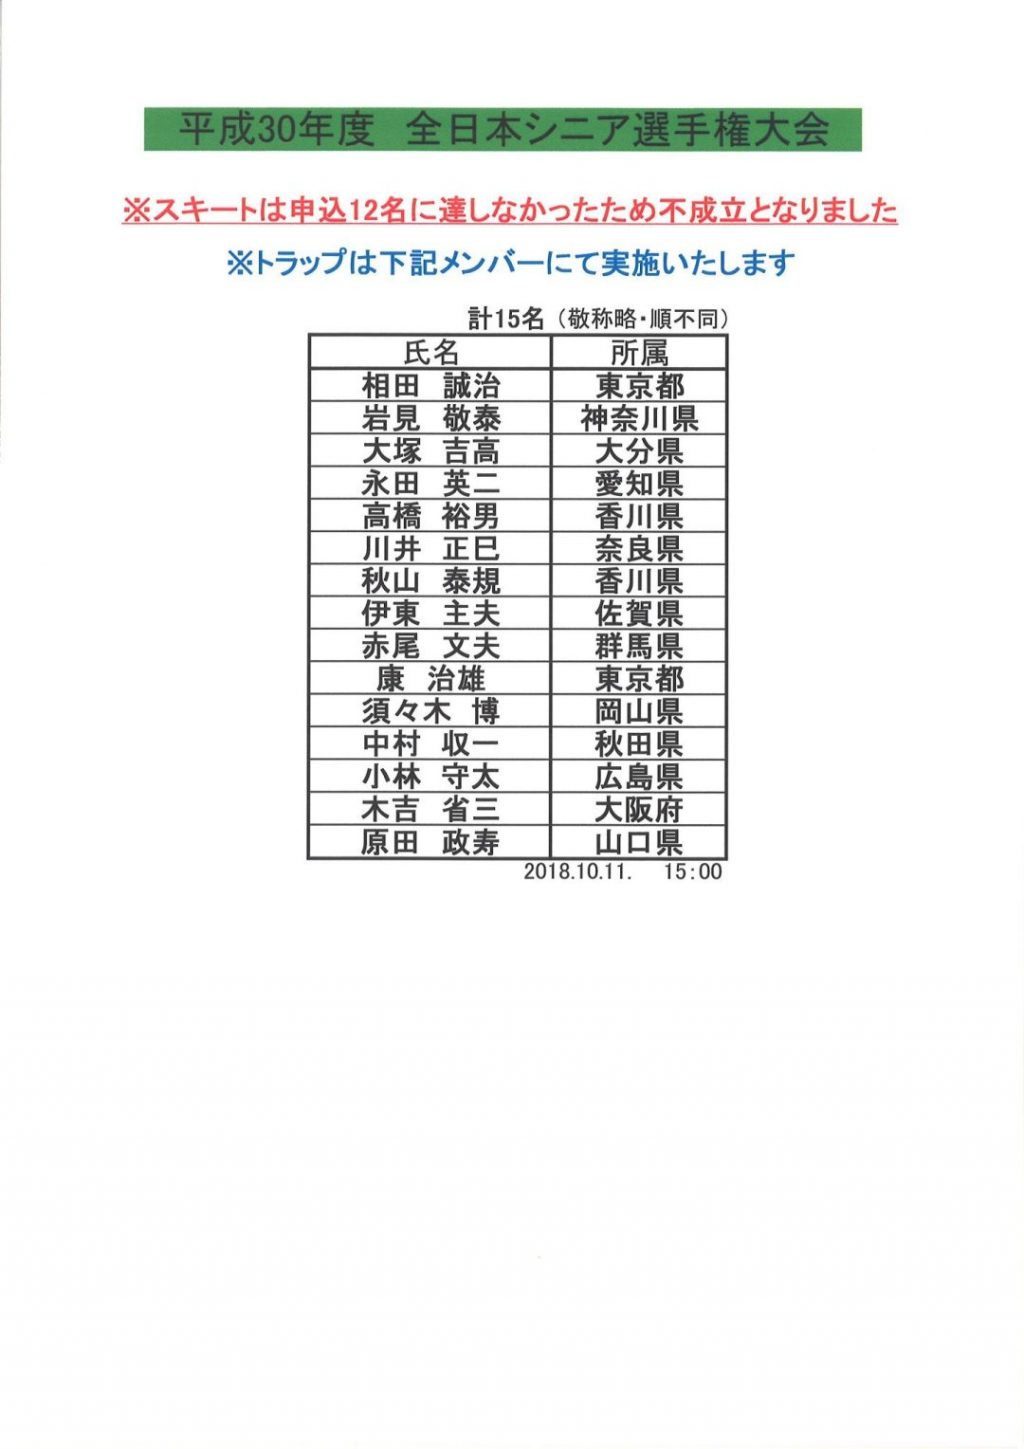 平成30年度全日本シニア 女子選手権大会 福岡 申込状況結果 Jcsa 日本クレー射撃協会